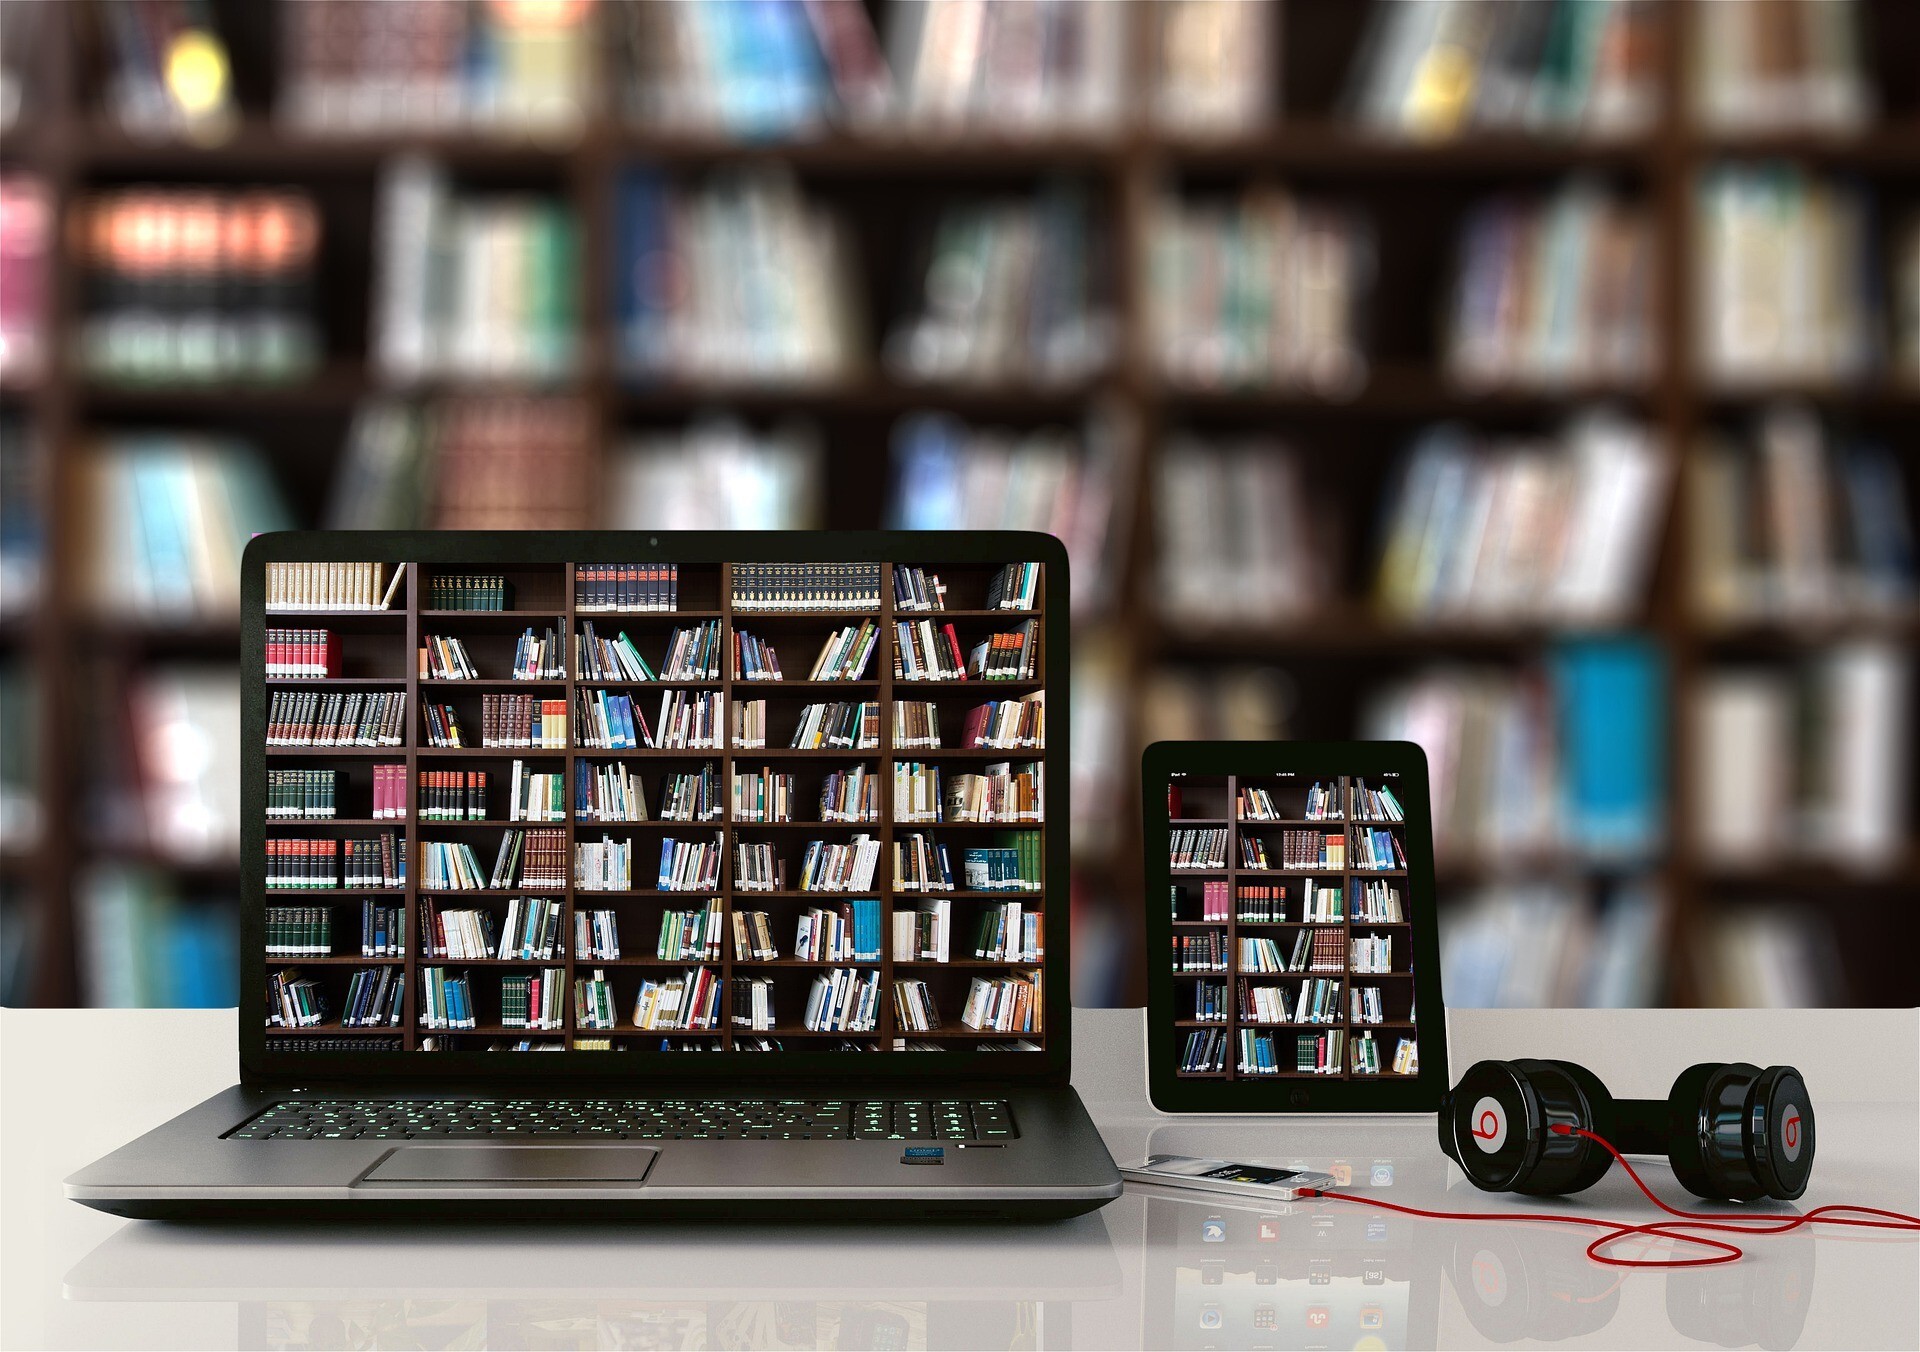 Na zdjęciu jest laptop i czytnik, na ekranie których wyświetlone są półki z książkami., oraz słuchawki.